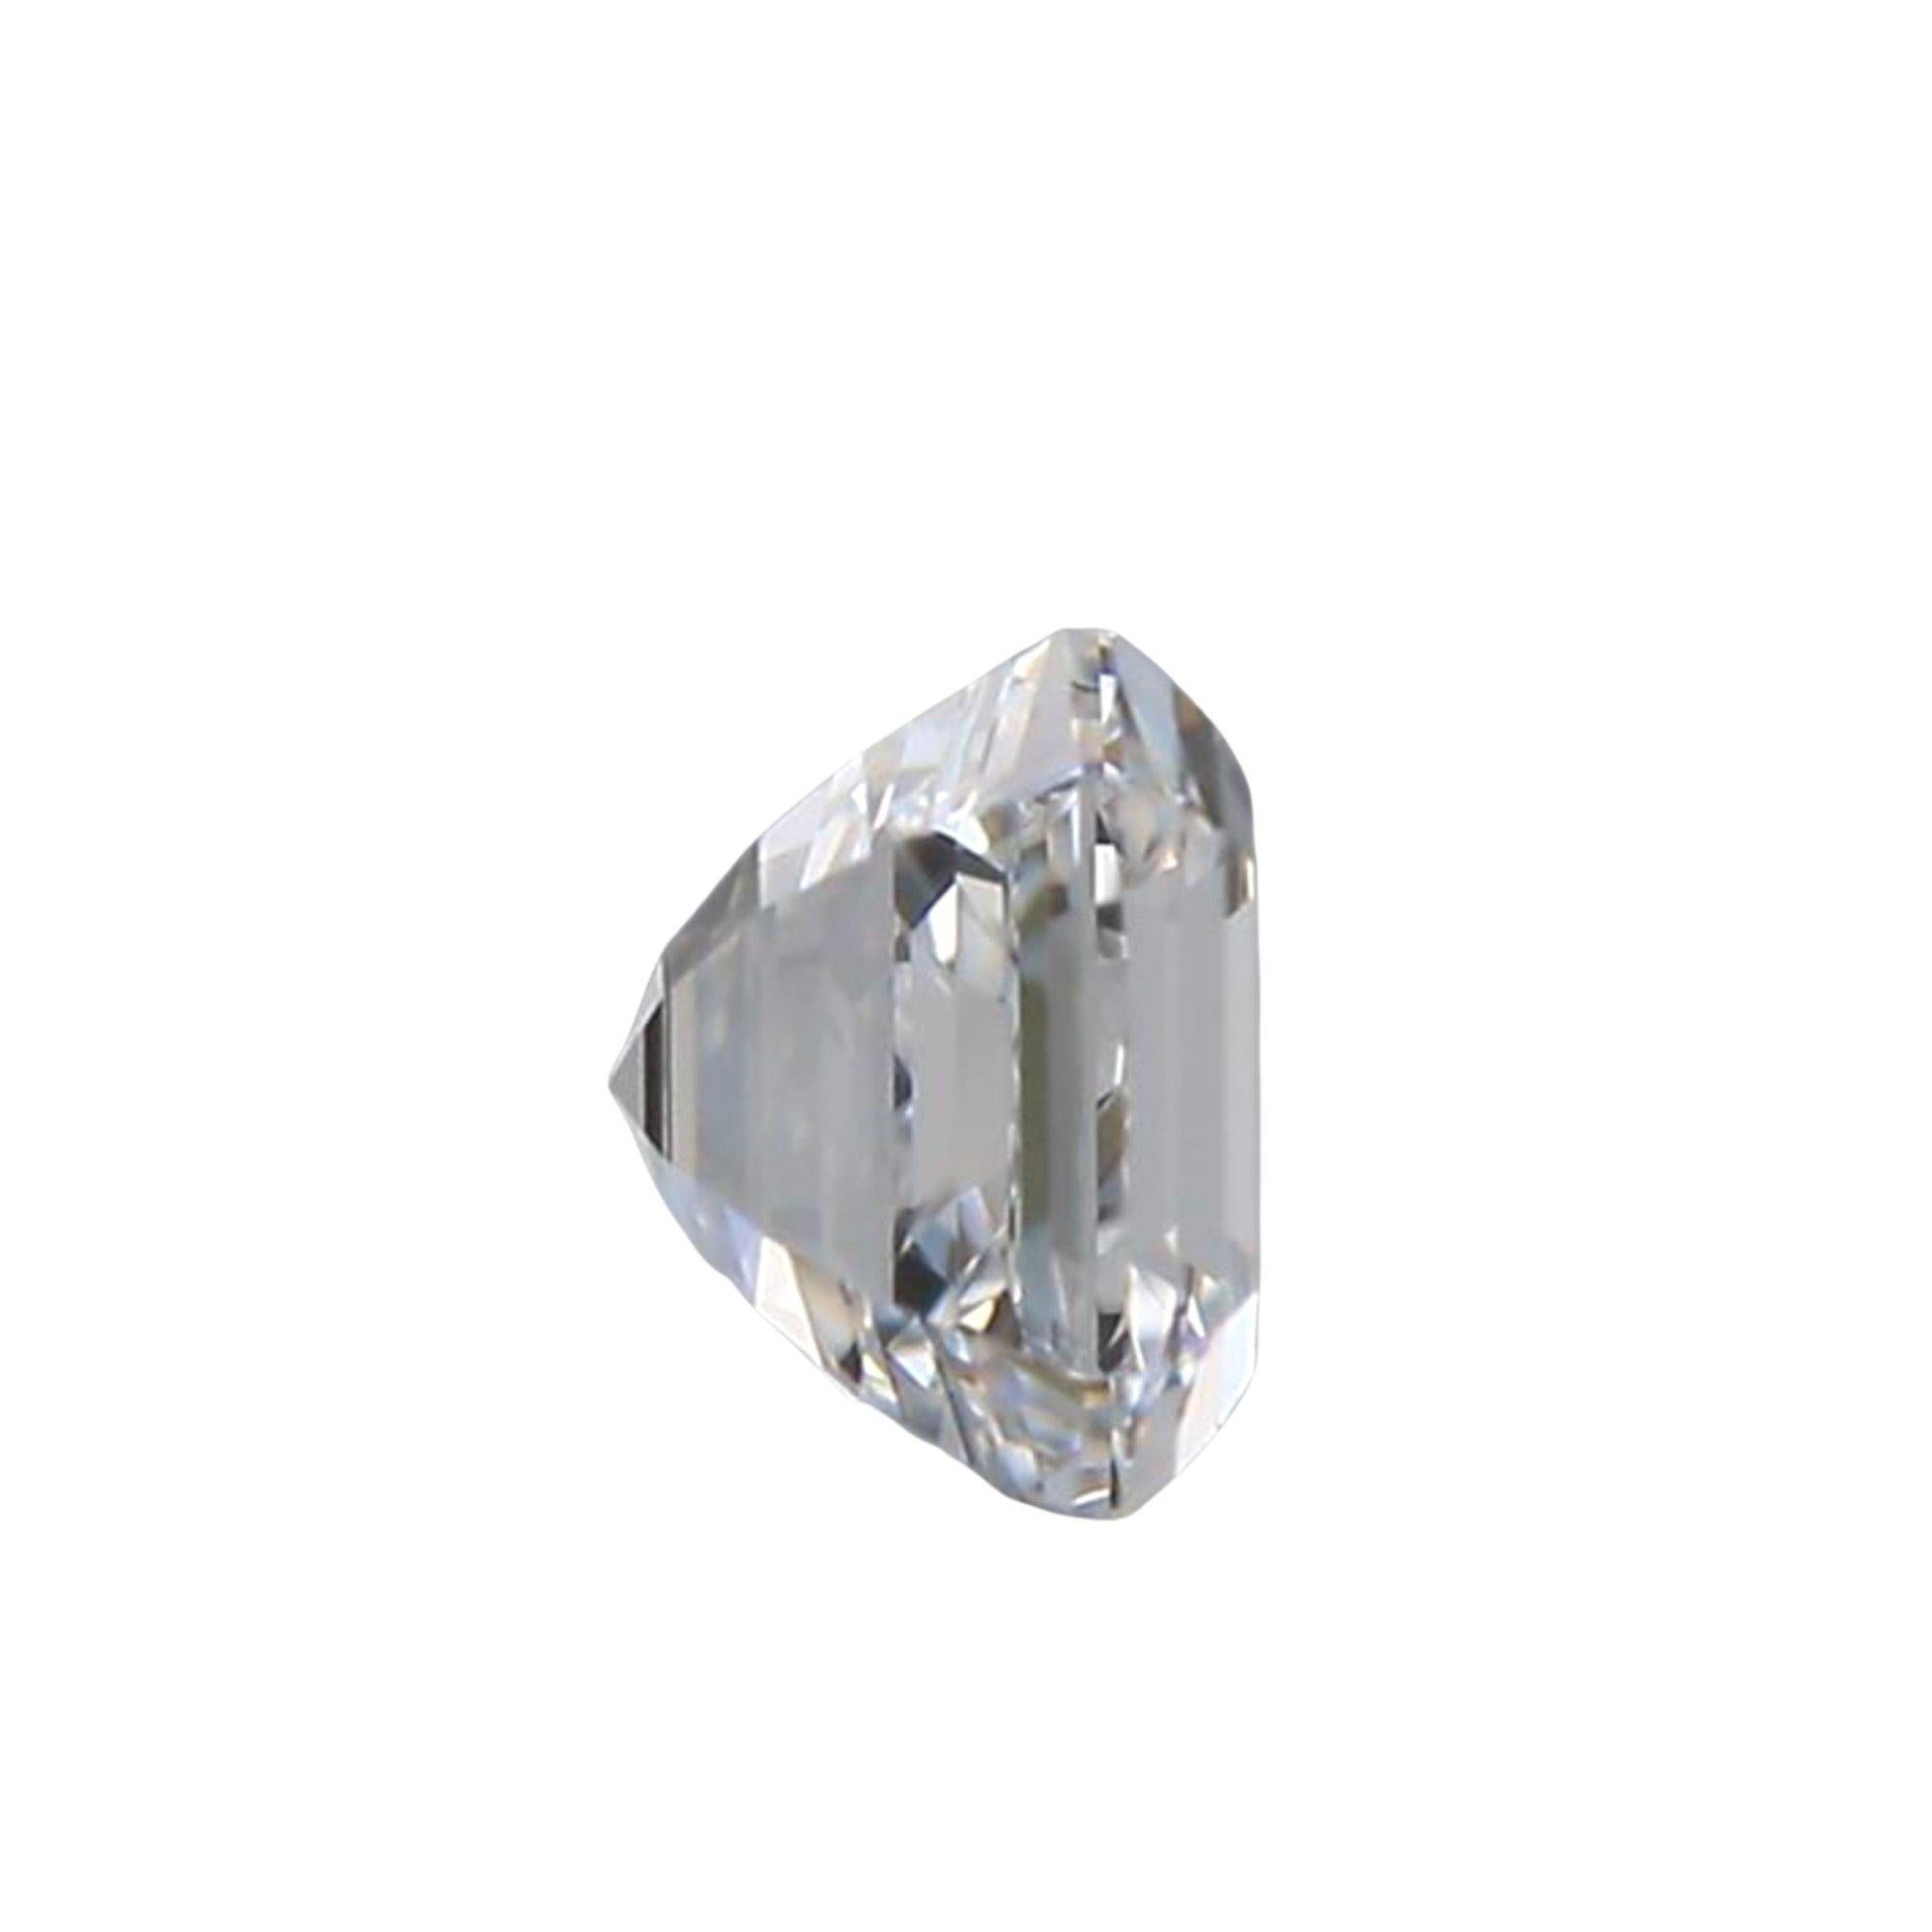 Taille Asscher 2 pices de diamants naturels 1,85 carat, Asscher, D  Colorless , VVS, certifis GIA en vente